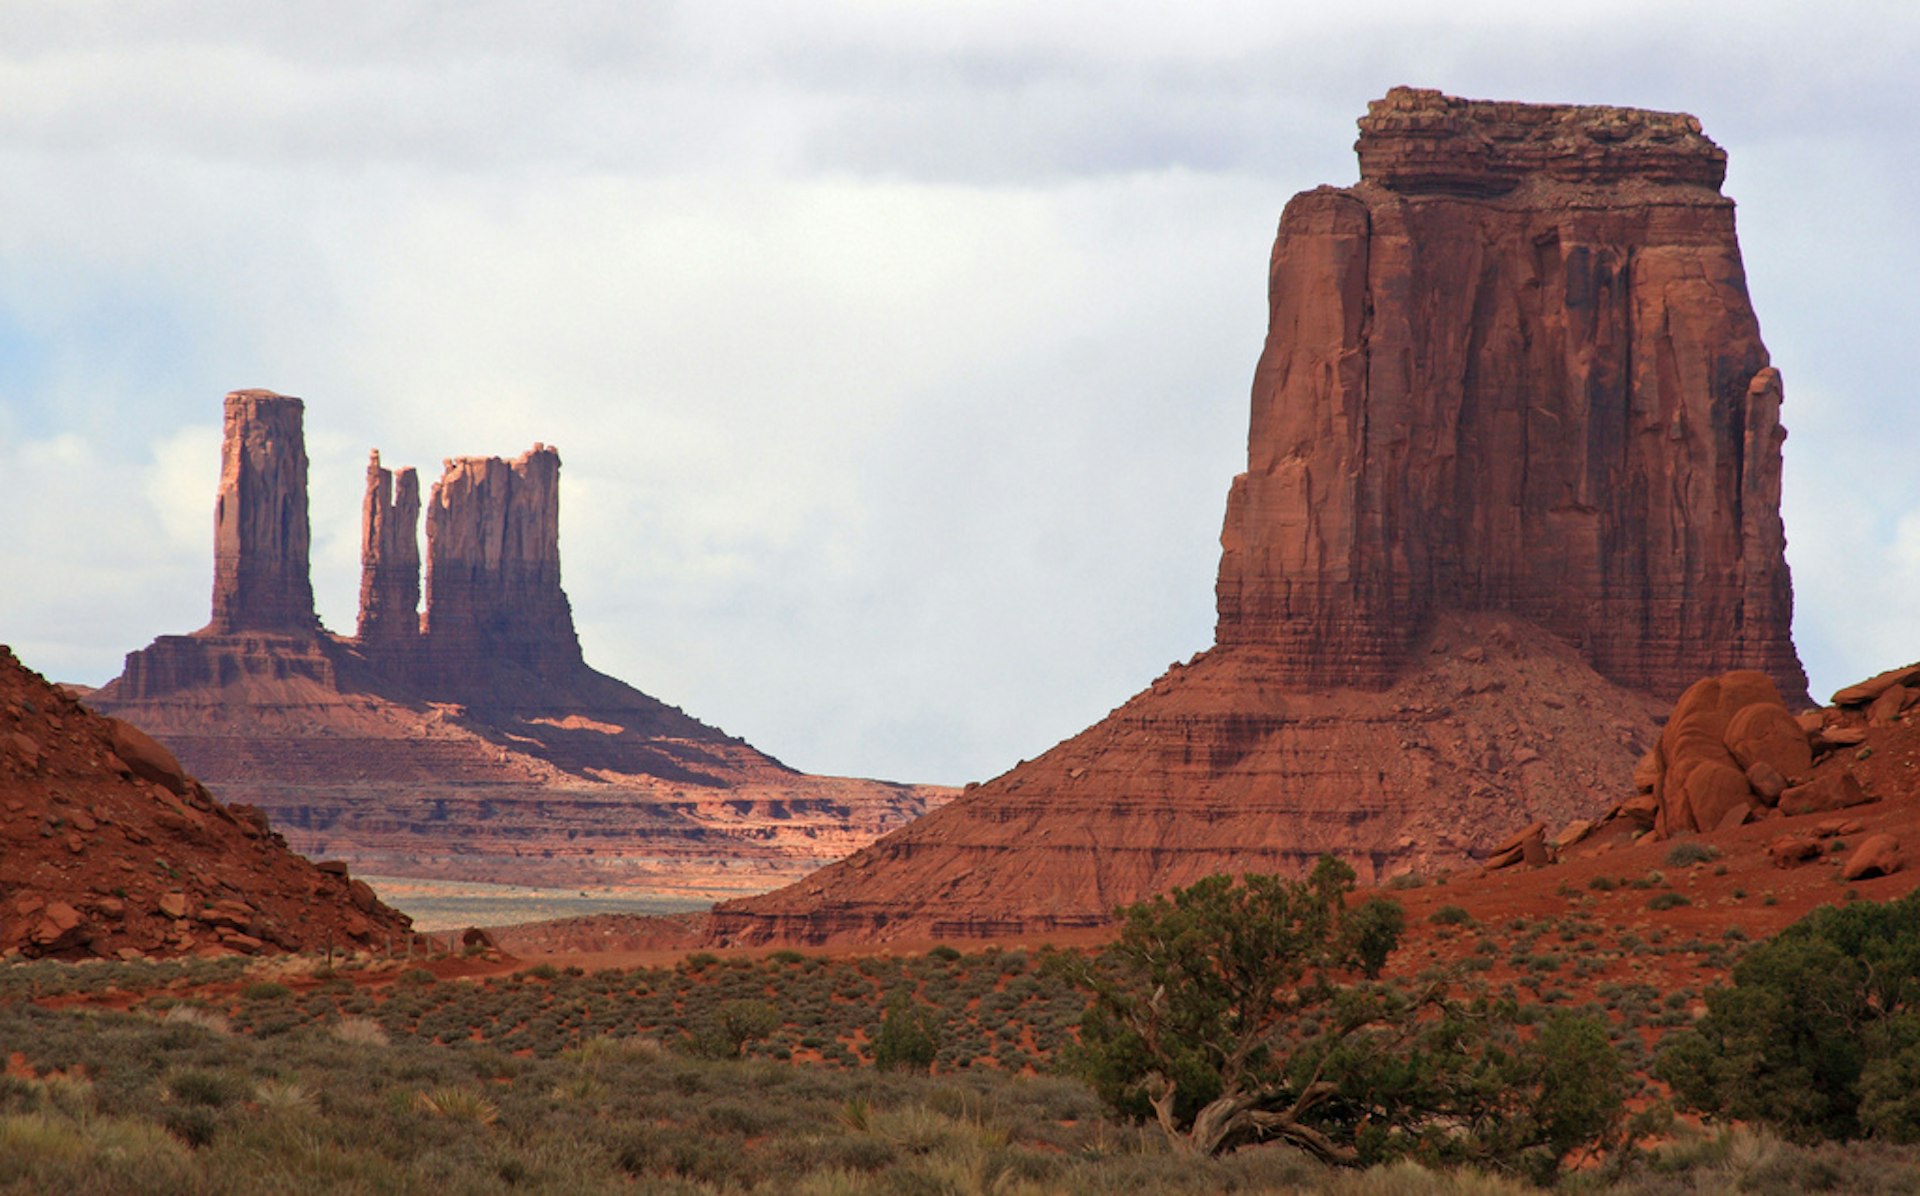 Monument Valley. Photo by Frank Kovalchek / CC BY 2.0